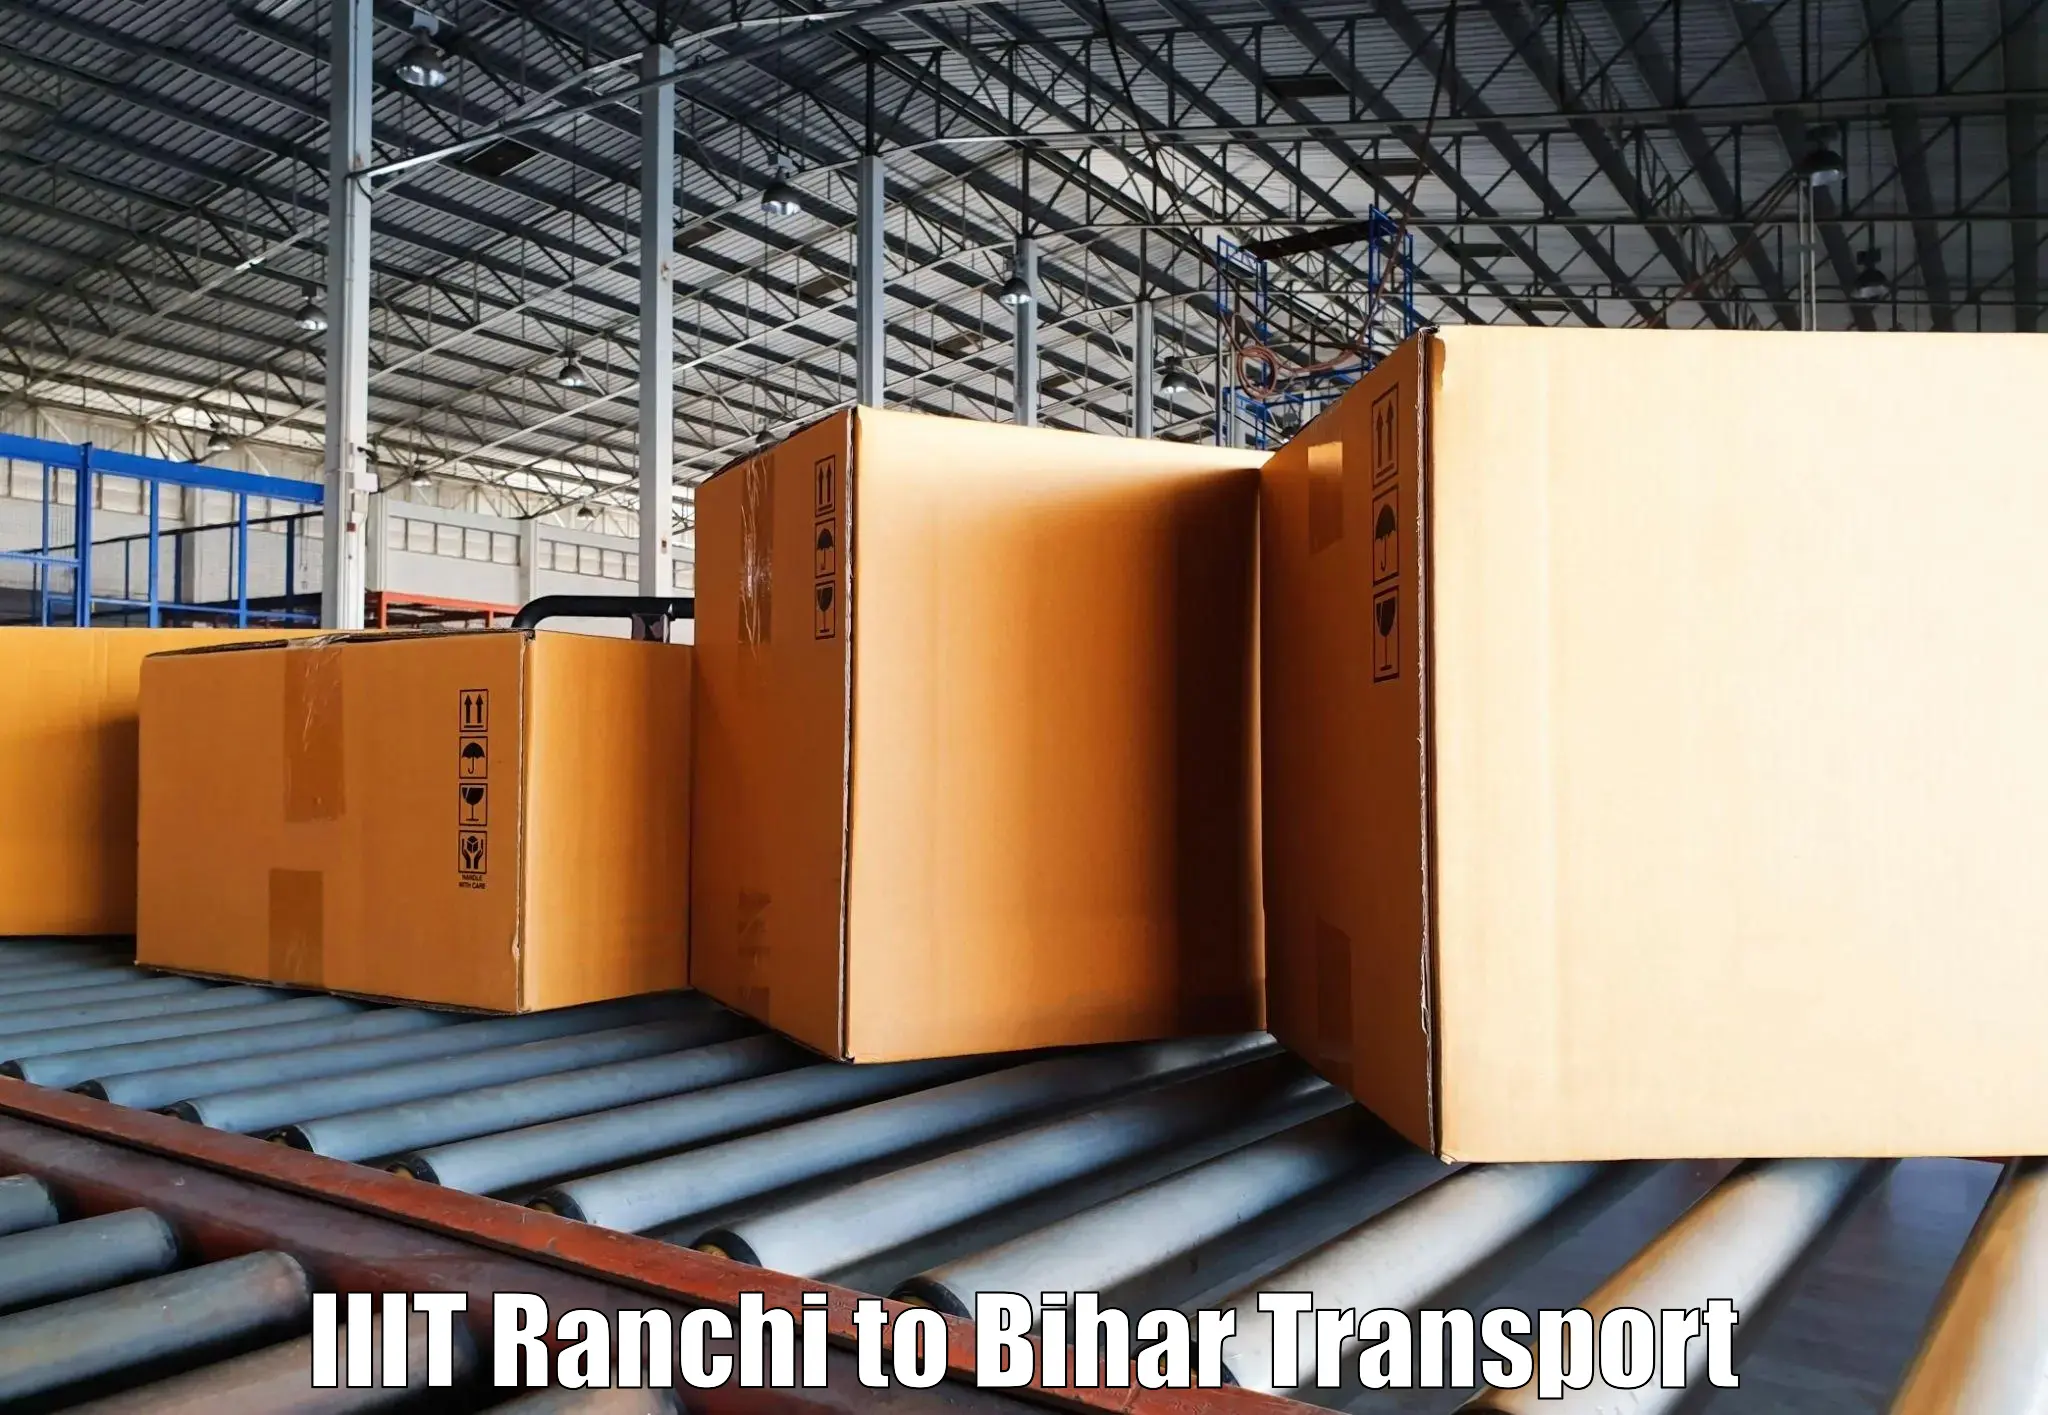 Online transport service IIIT Ranchi to Bihar